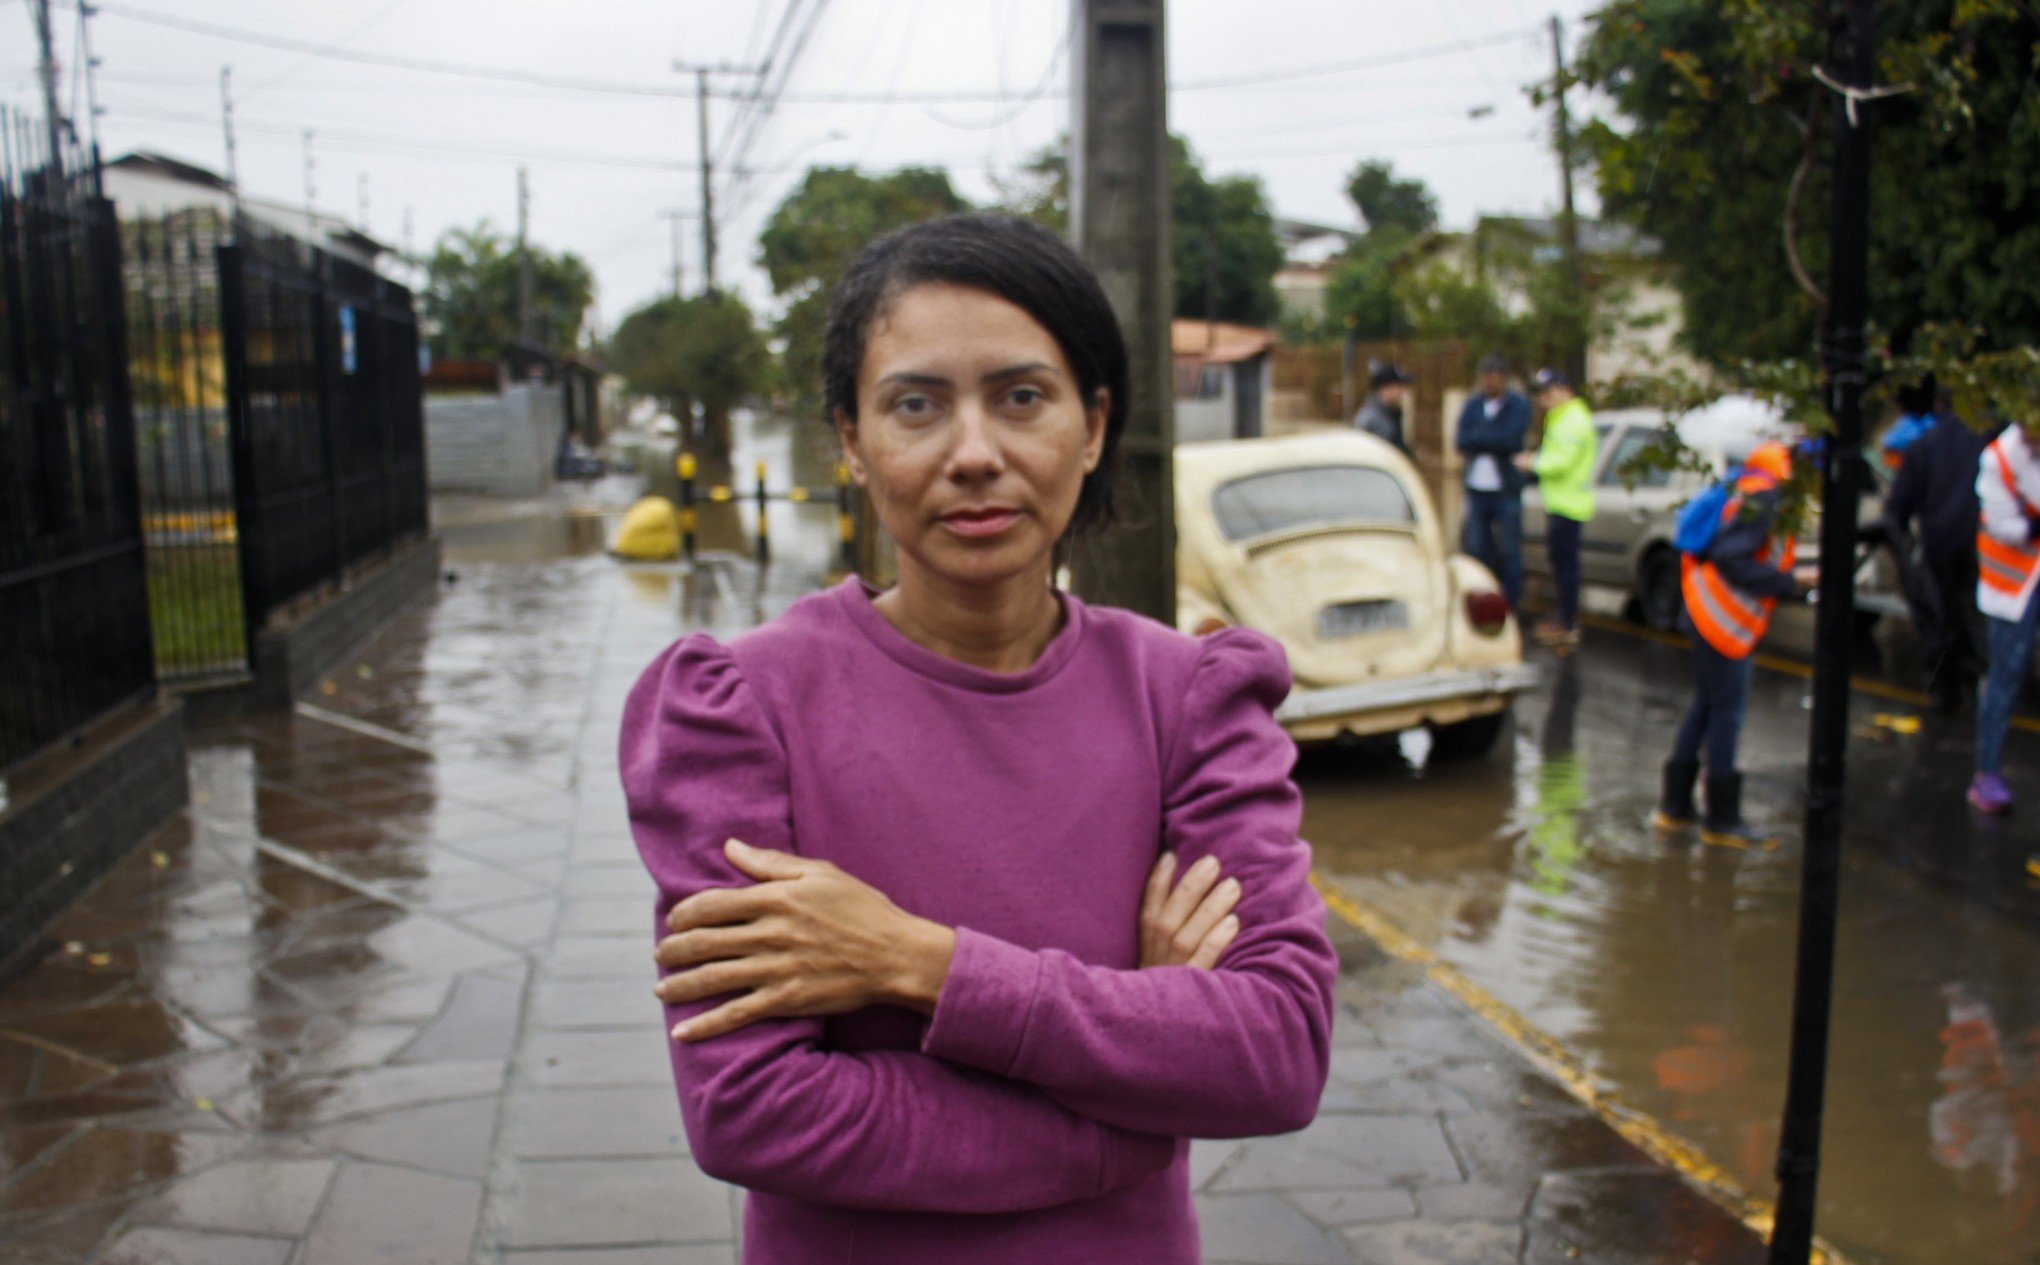 DIA DAS MÃES: "As crianças vão passar o dia grudadas em mim", diz mãe que perdeu casa em enchente